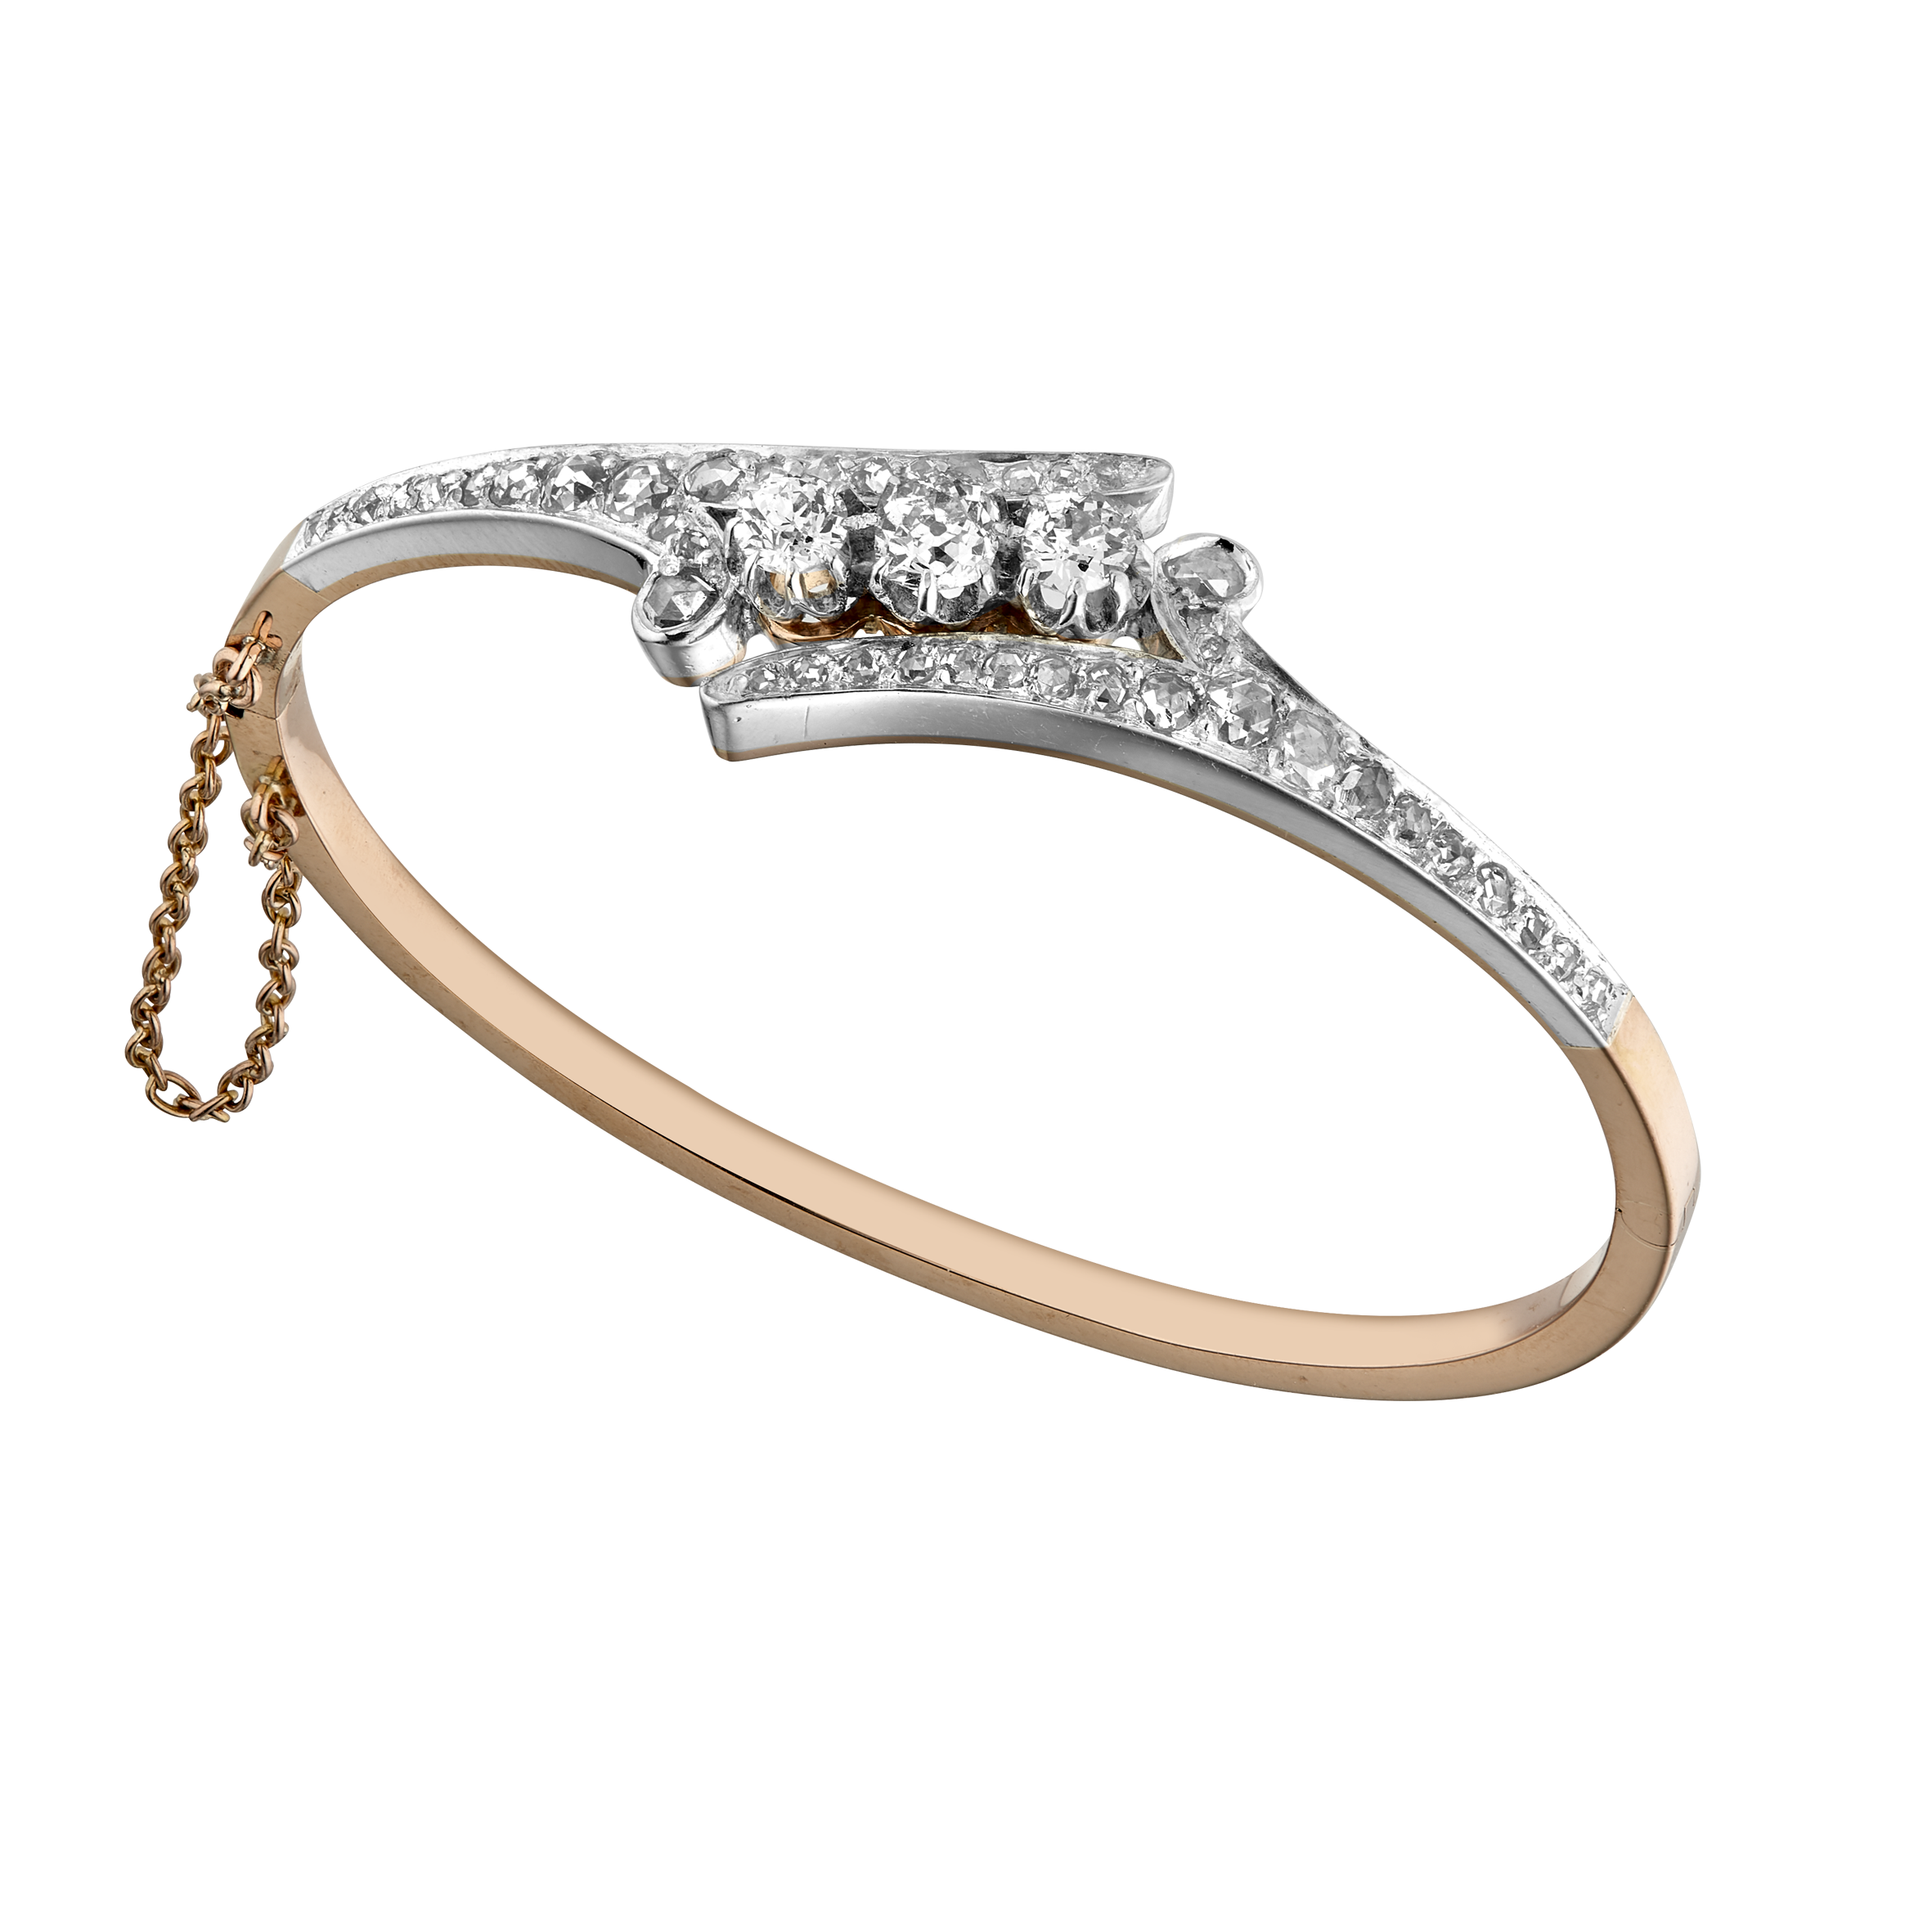 Bracelet rigide diamants vers 1860 Gerphagnon